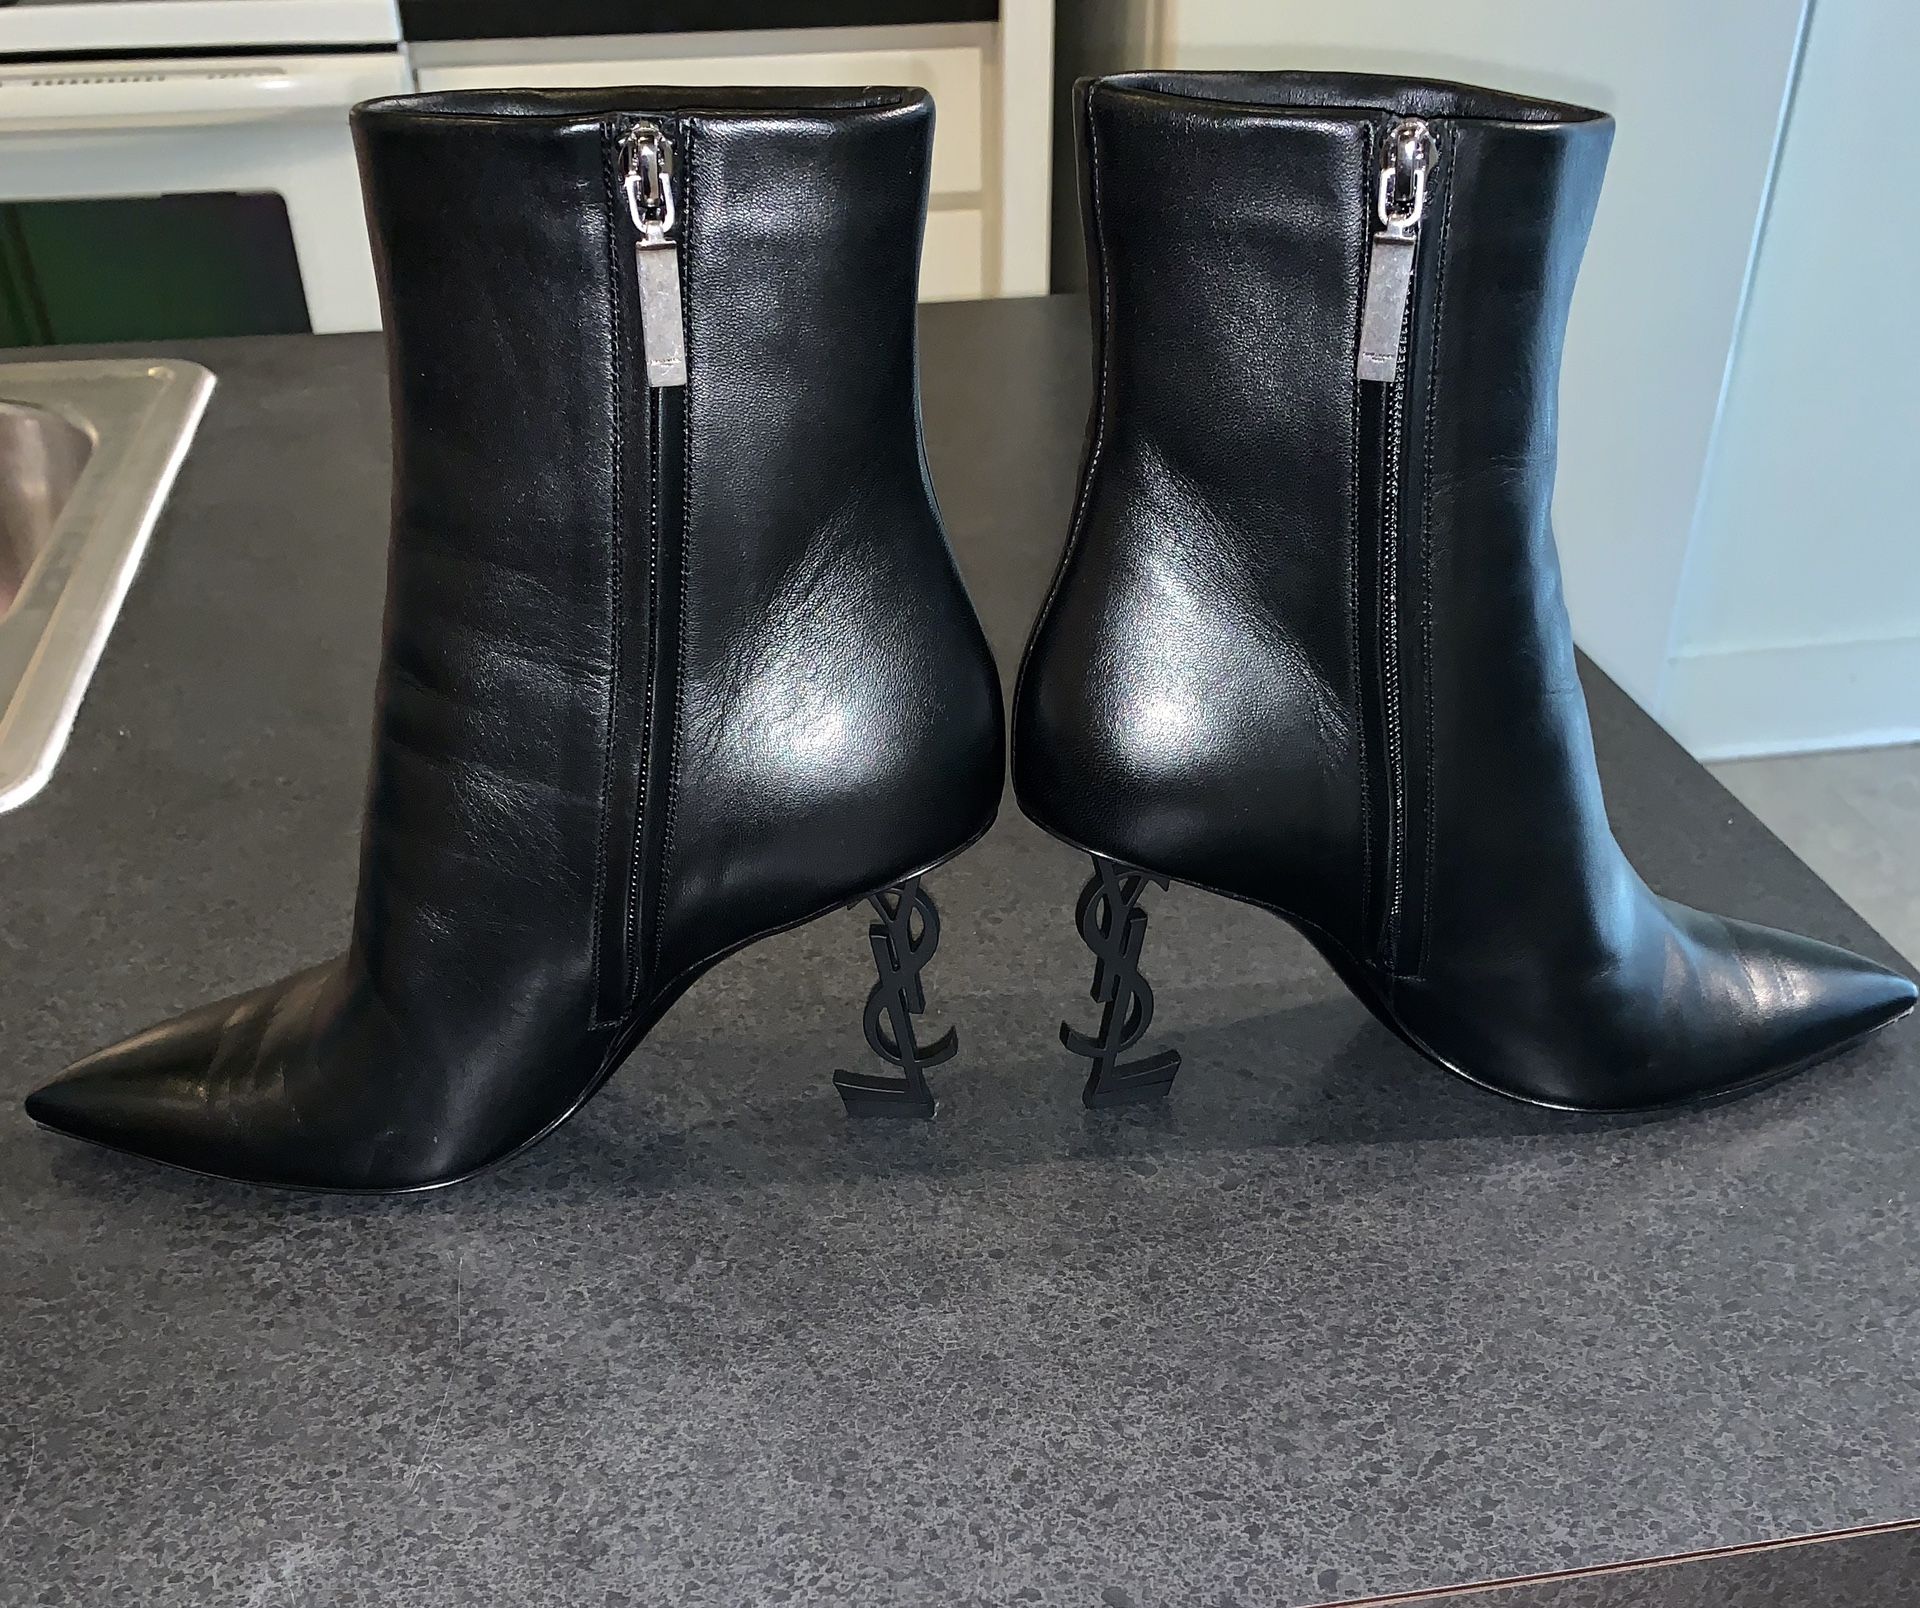 Authentic Saint Laurent heeled boots